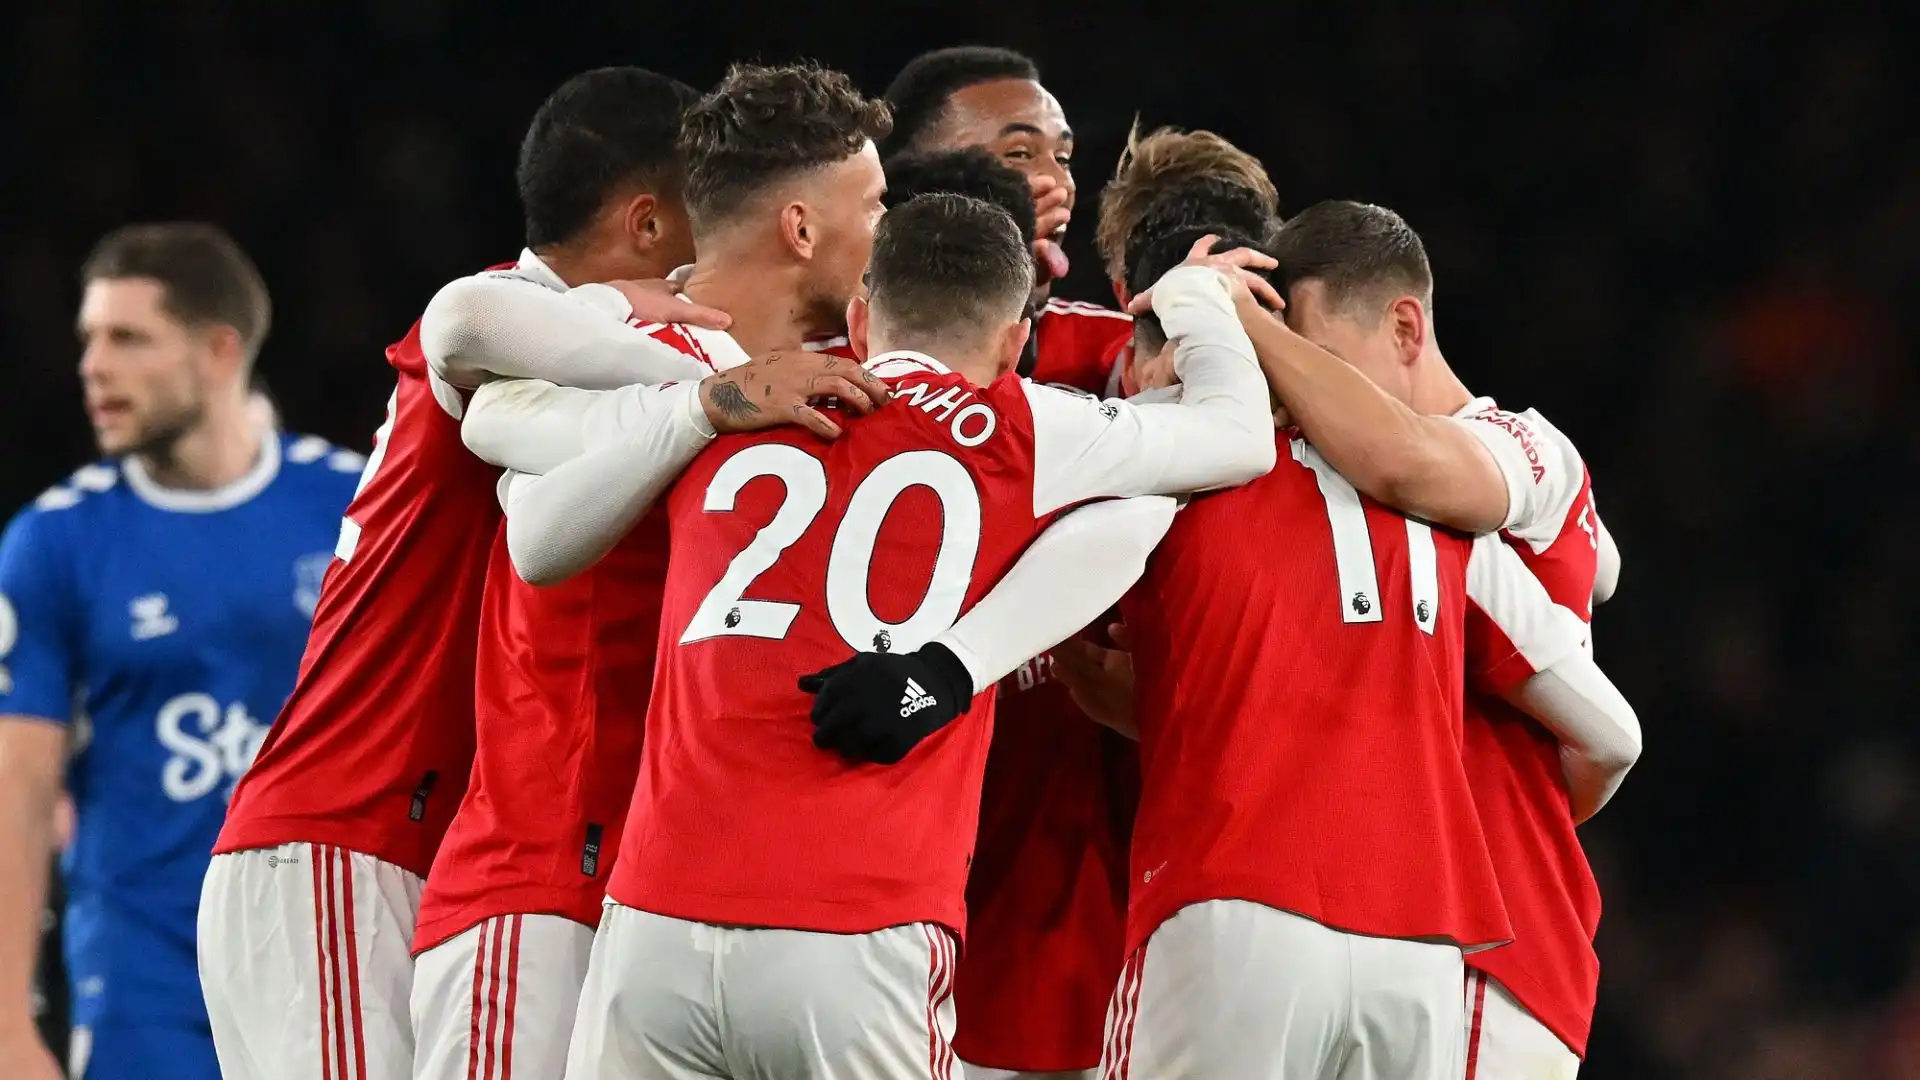 L'Arsenal centra il terzo successo consecutivo